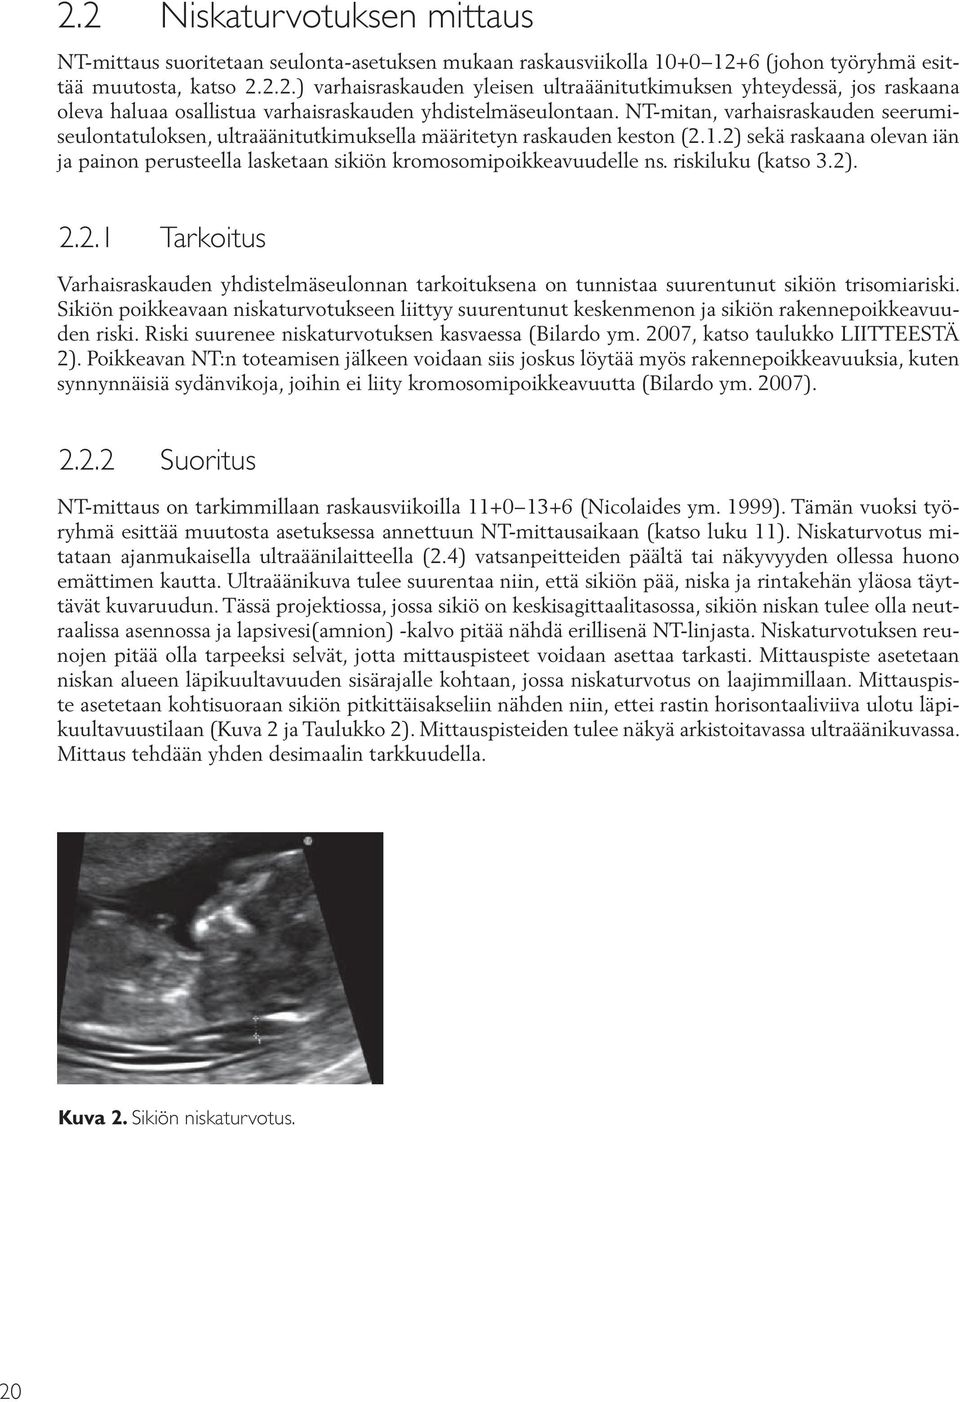 2) sekä raskaana olevan iän ja painon perusteella lasketaan sikiön kromosomipoikkeavuudelle ns. riskiluku (katso 3.2). 2.2.1 Tarkoitus Varhaisraskauden yhdistelmäseulonnan tarkoituksena on tunnistaa suurentunut sikiön trisomiariski.